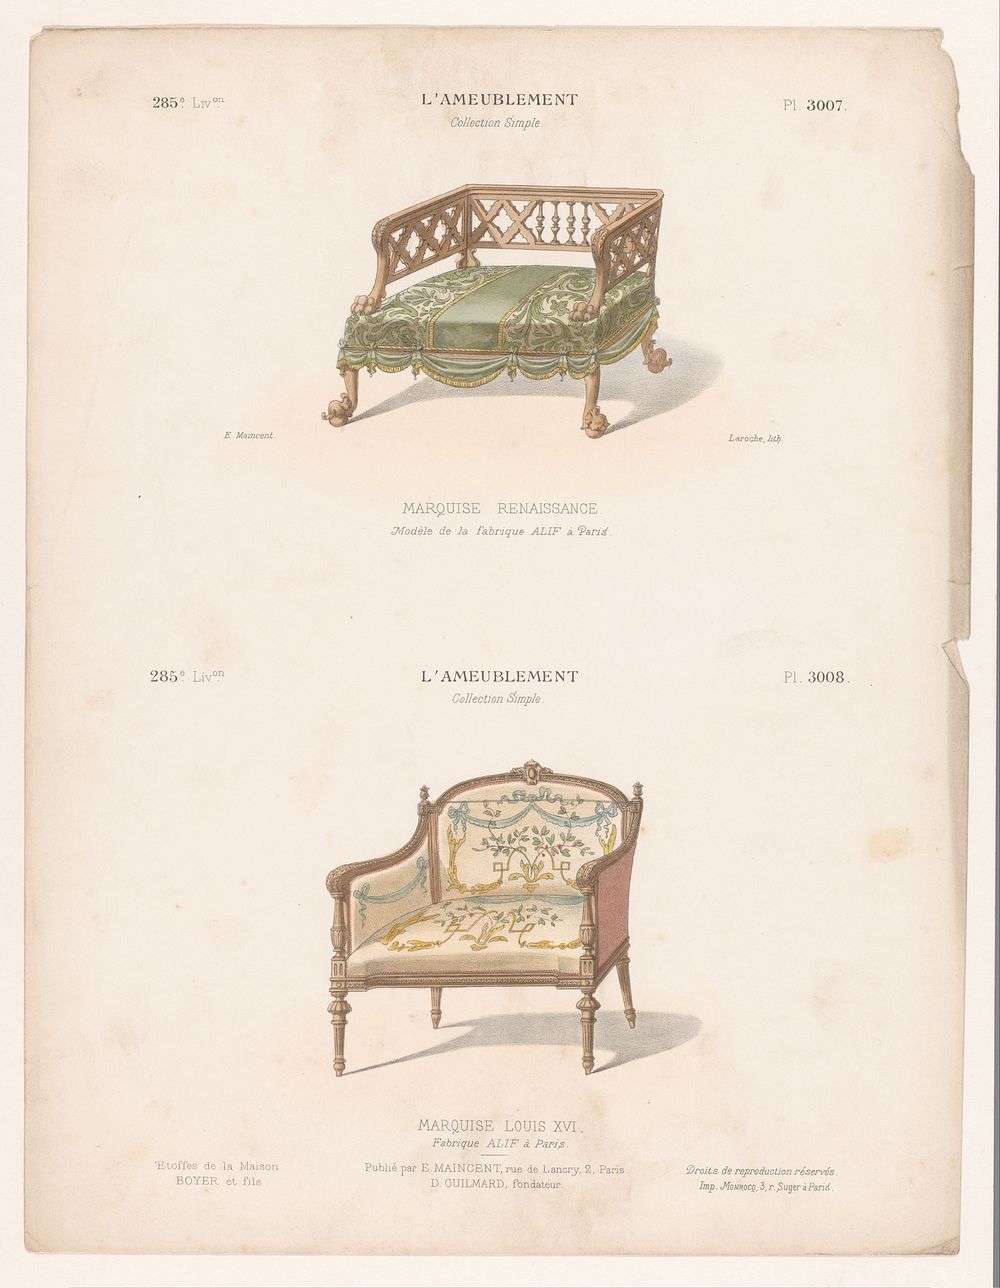 Twee stoelen (1885 - 1895) by Léon Laroche, Monrocq, Eugène Maincent and Désiré Guilmard